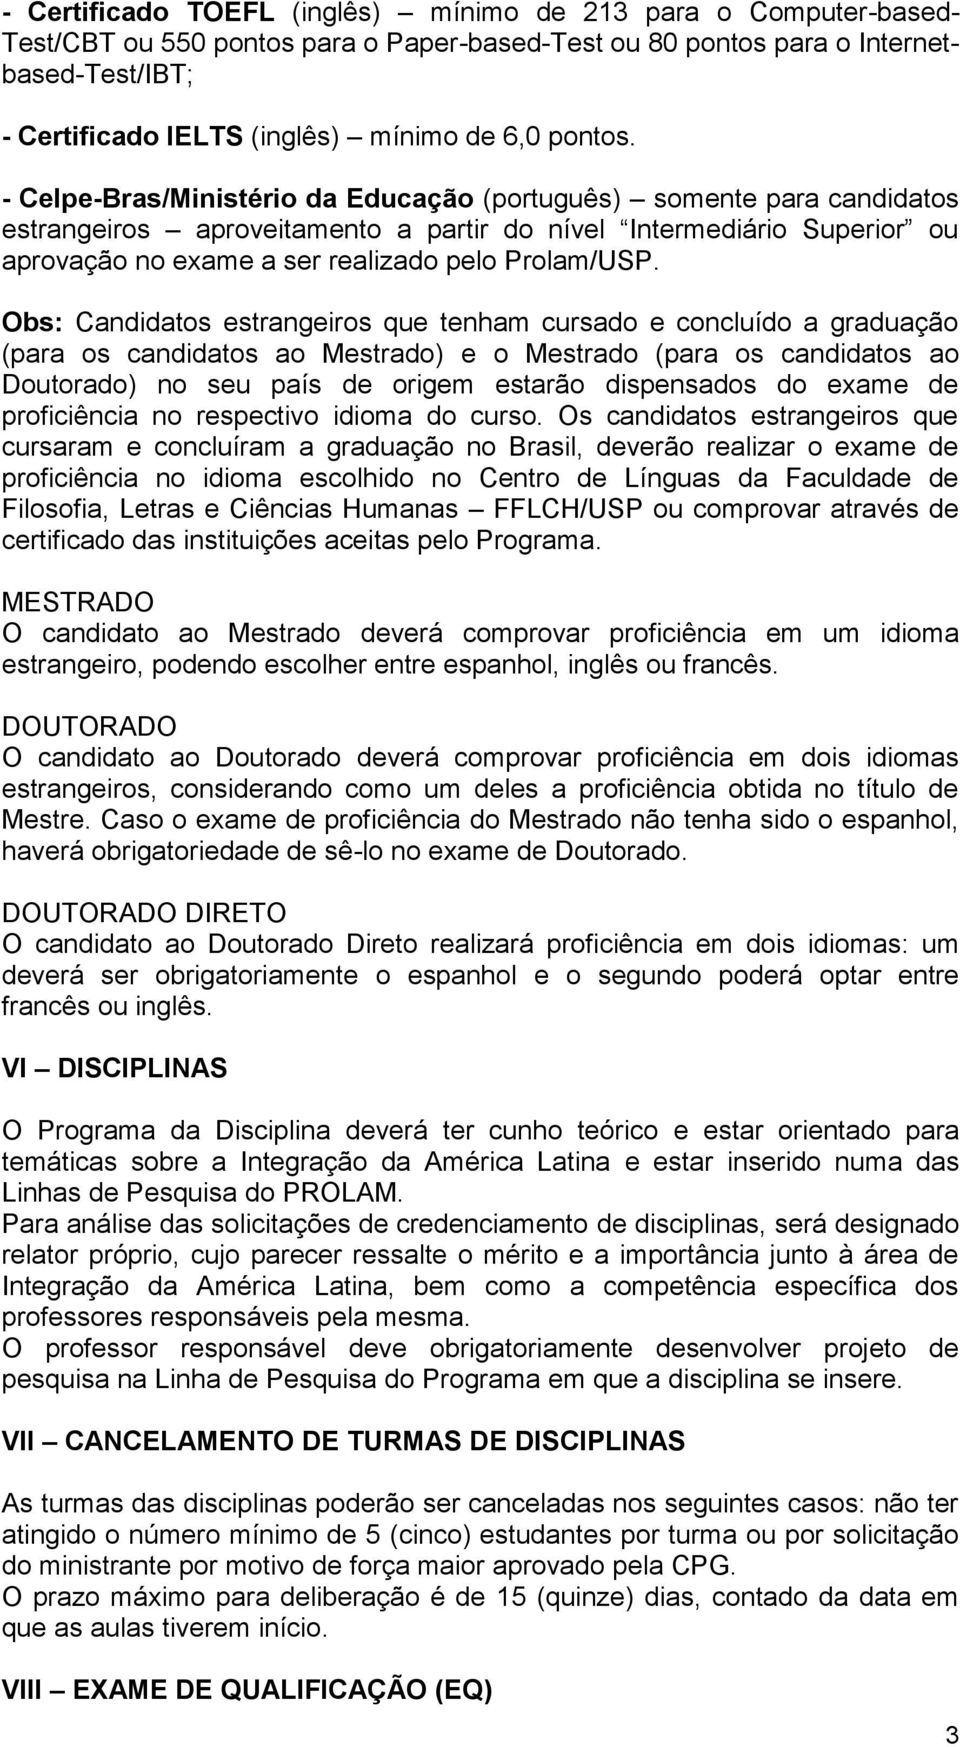 - Celpe-Bras/Ministério da Educação (português) somente para candidatos estrangeiros aproveitamento a partir do nível Intermediário Superior ou aprovação no exame a ser realizado pelo Prolam/USP.